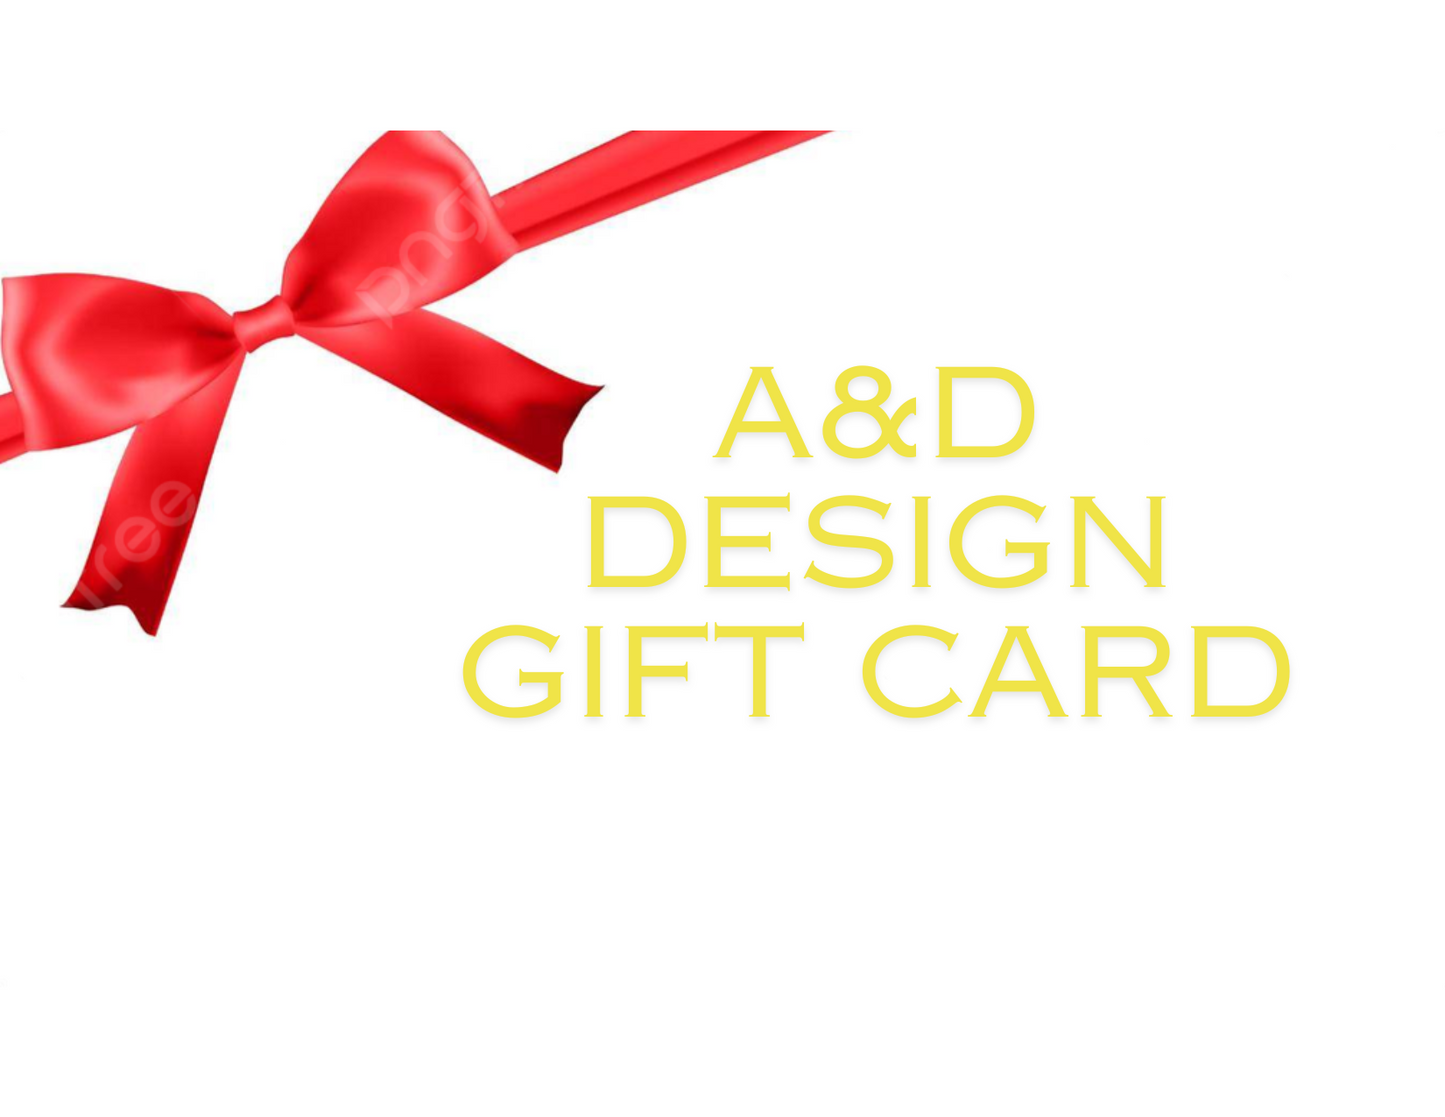 A&D Design Gift Card